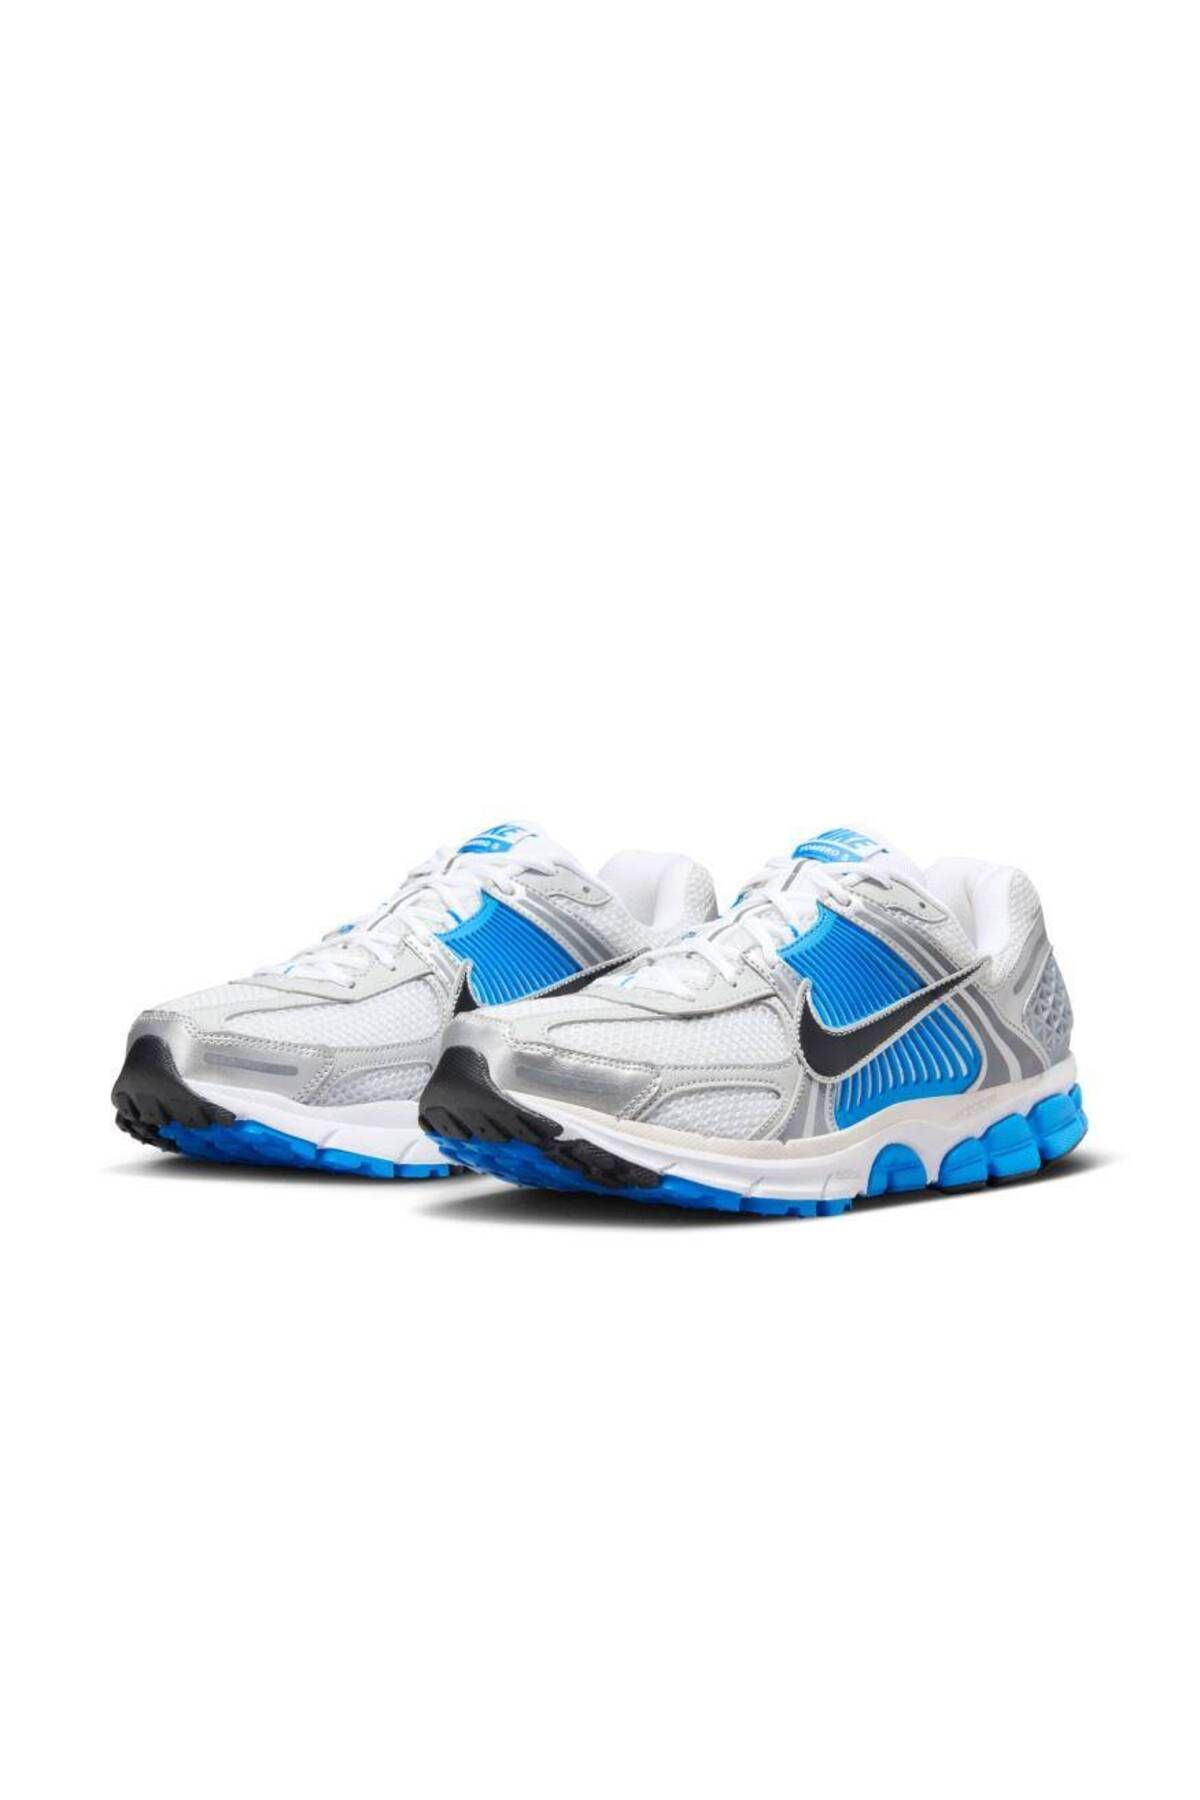 Nike Zoom Vomero 5 Erkek Gri/Mavi Renk Sneaker Ayakkabı